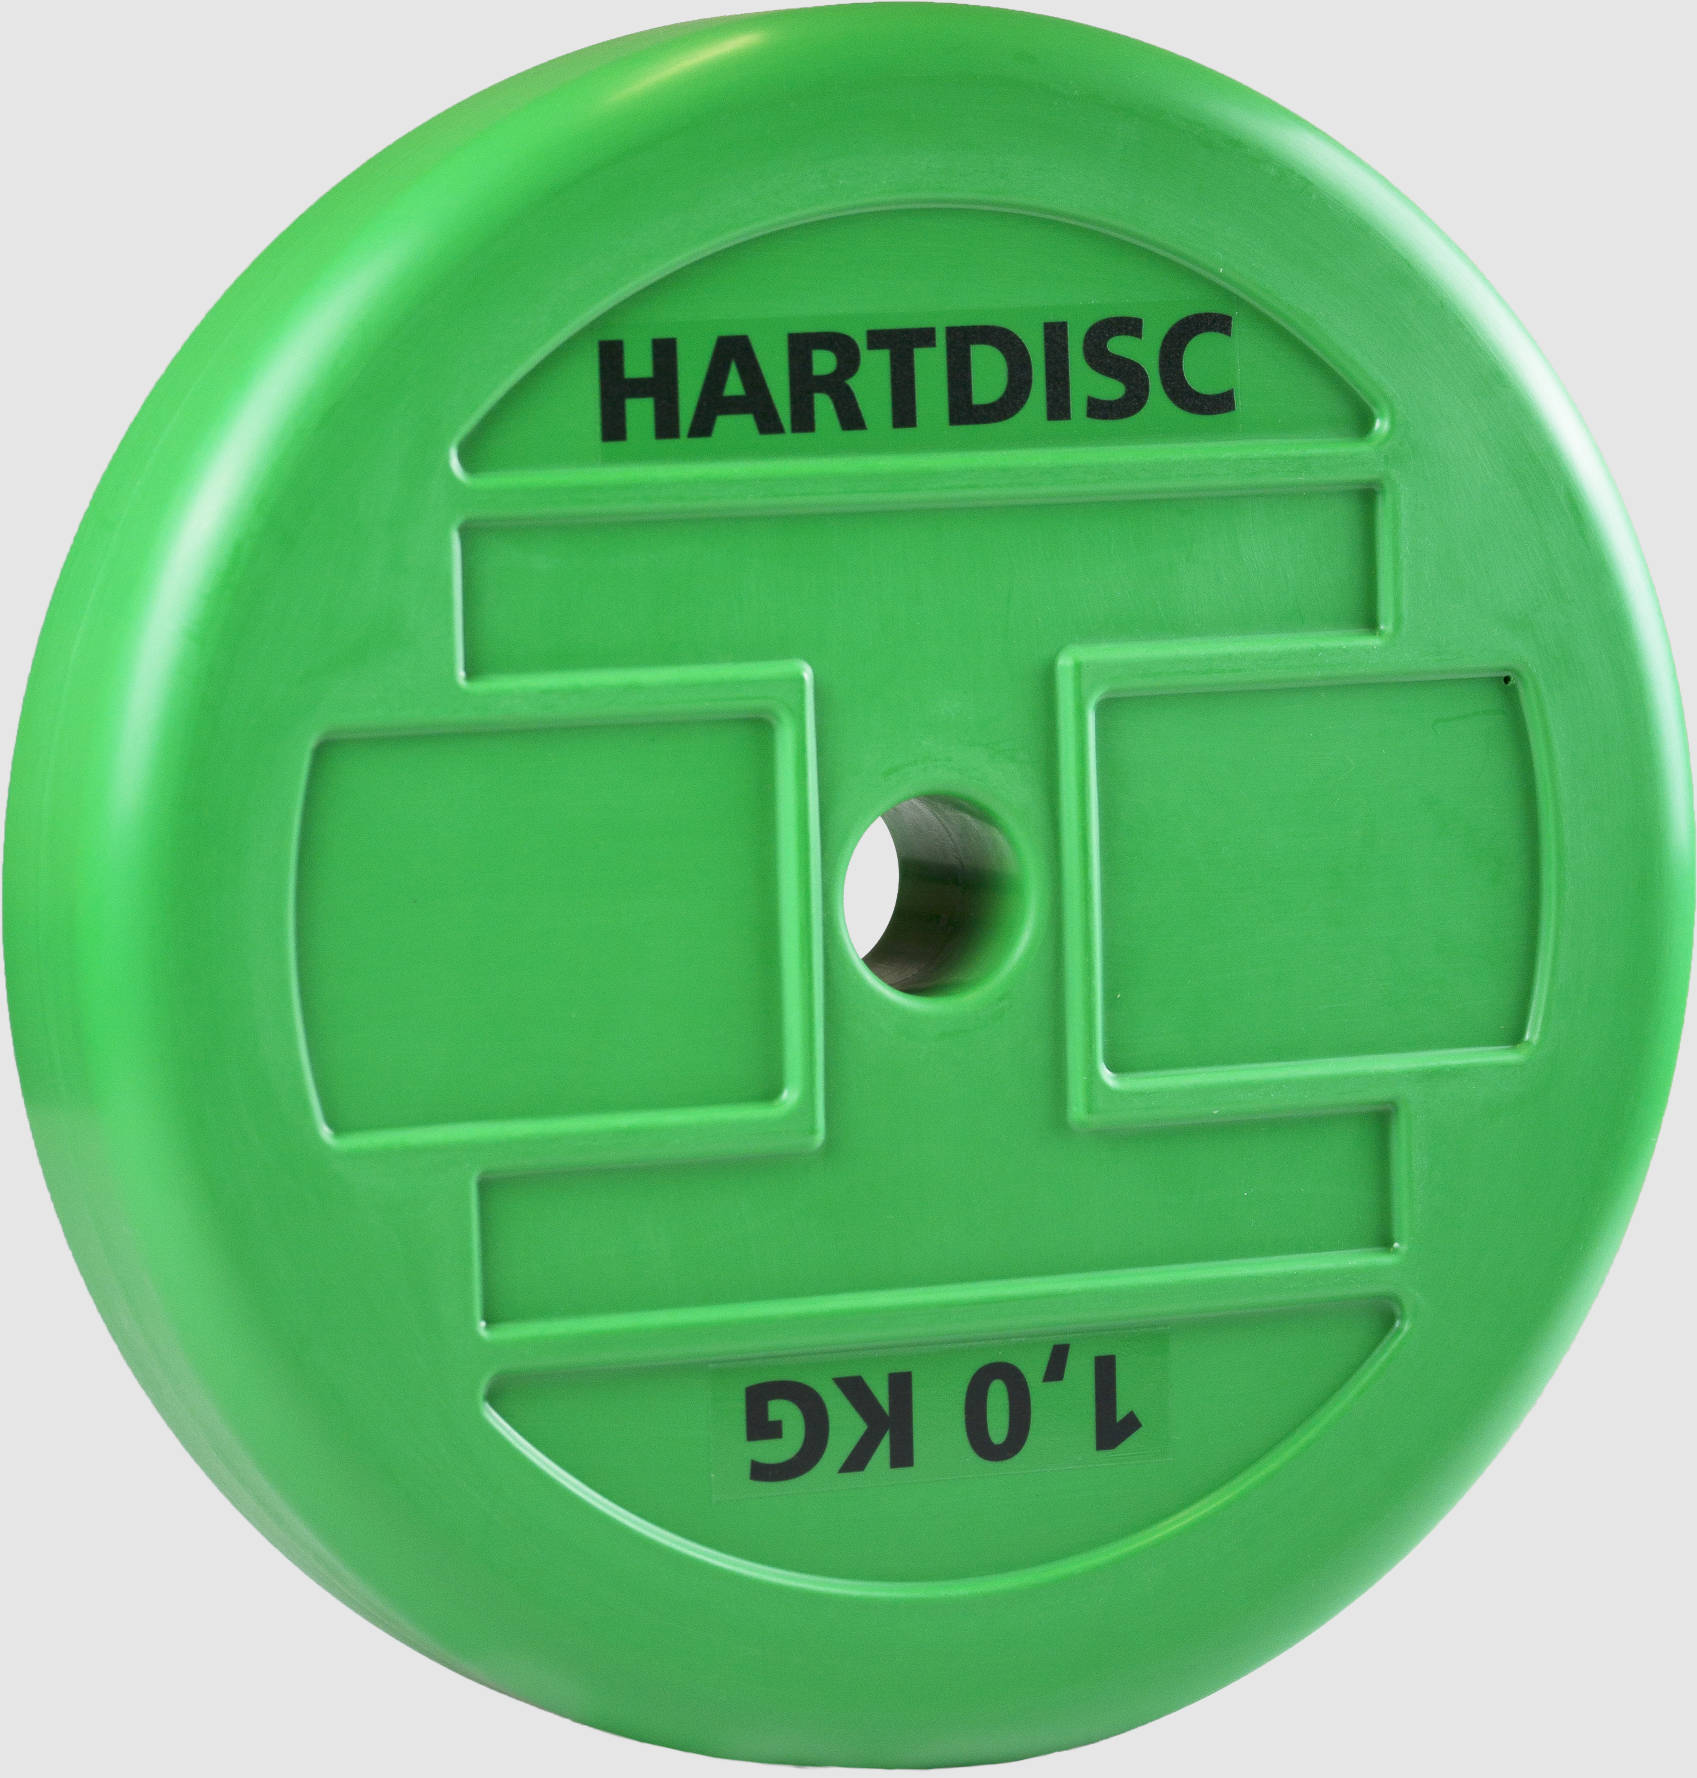 HartDisc-Technikscheibe